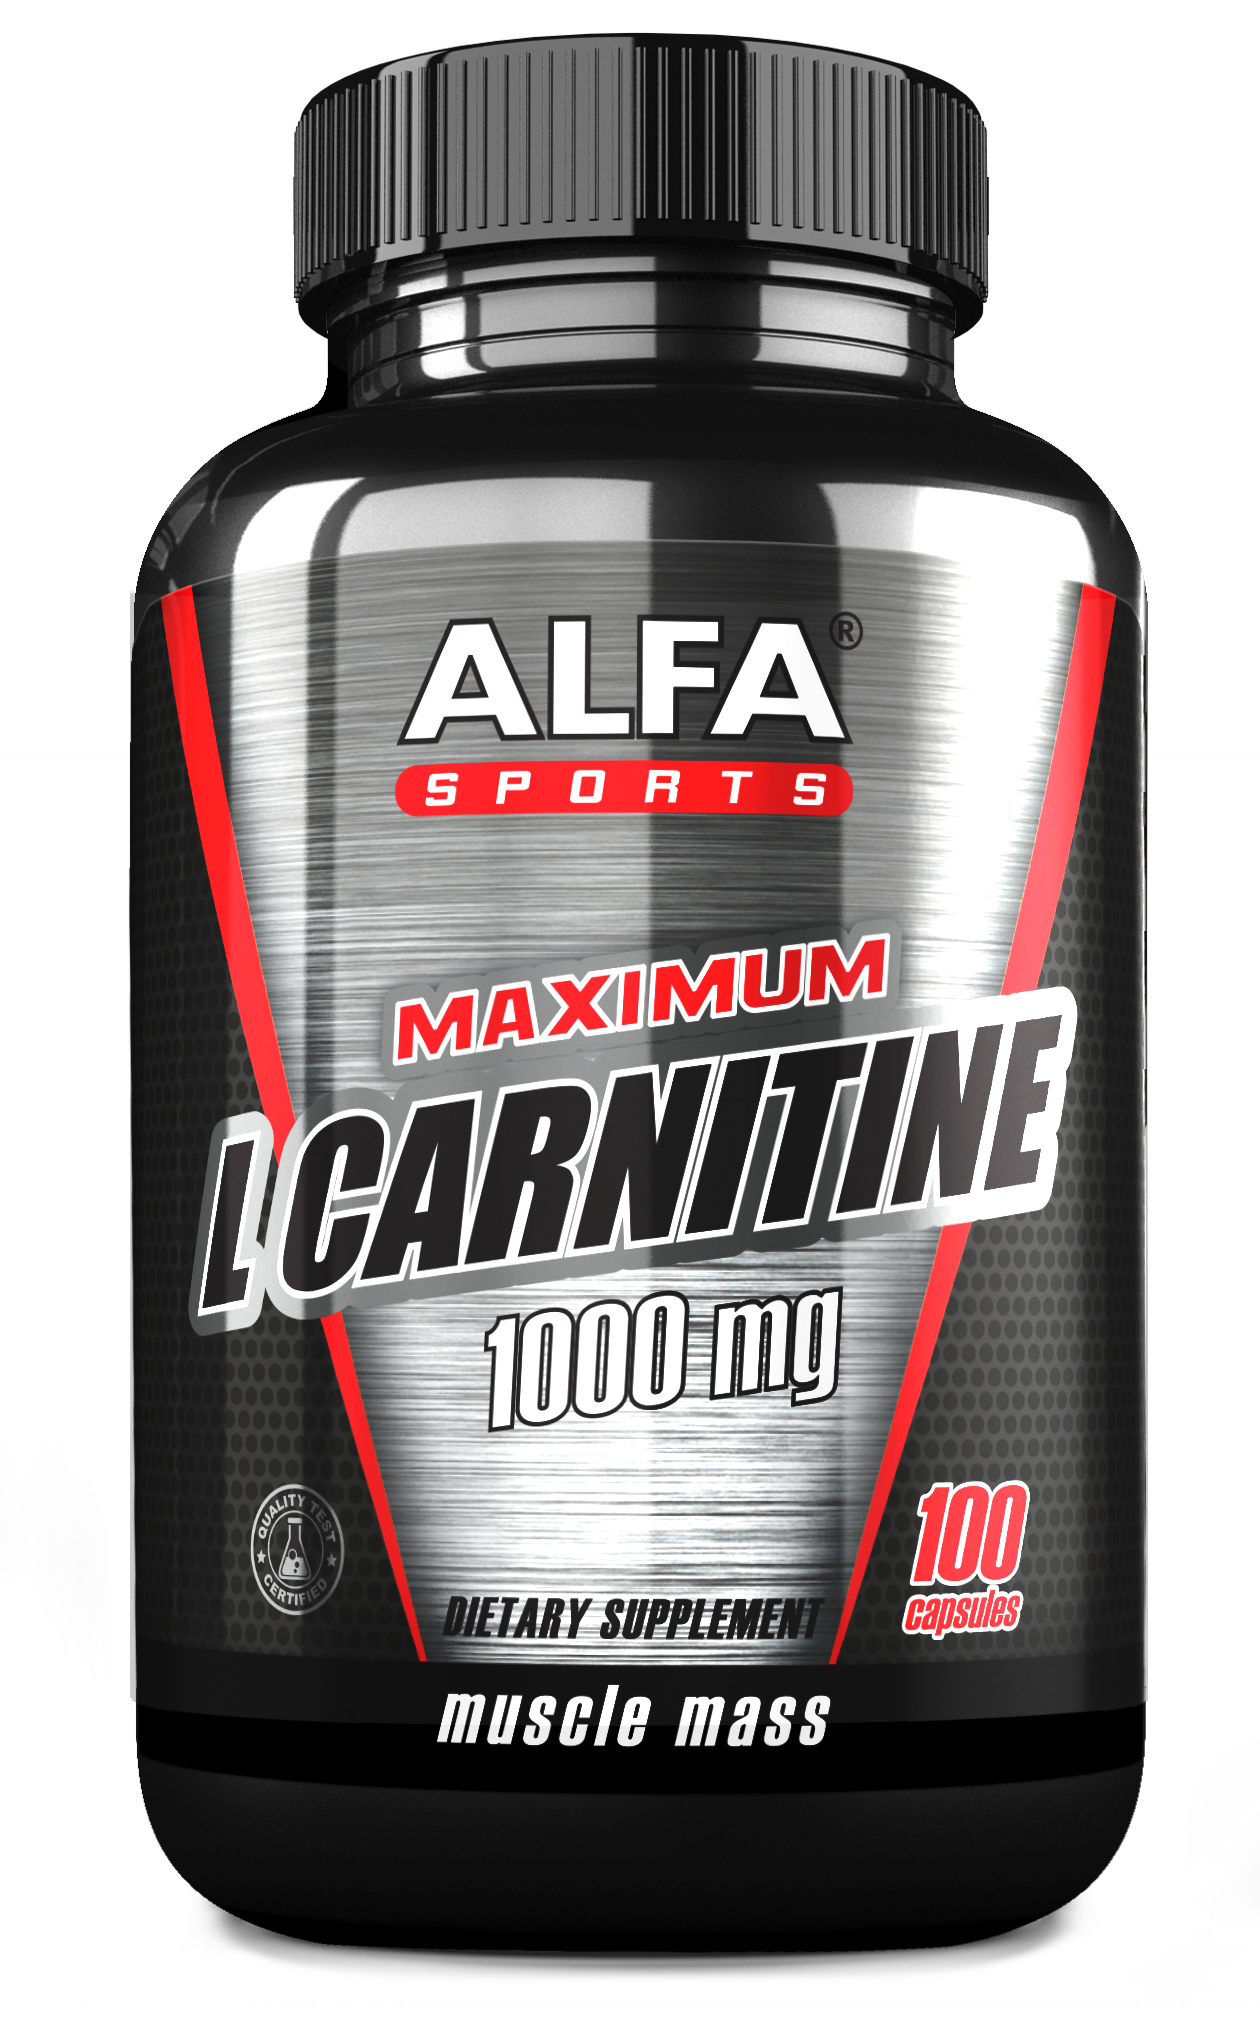 MAXIMUM L CARNITINE 1000 MG